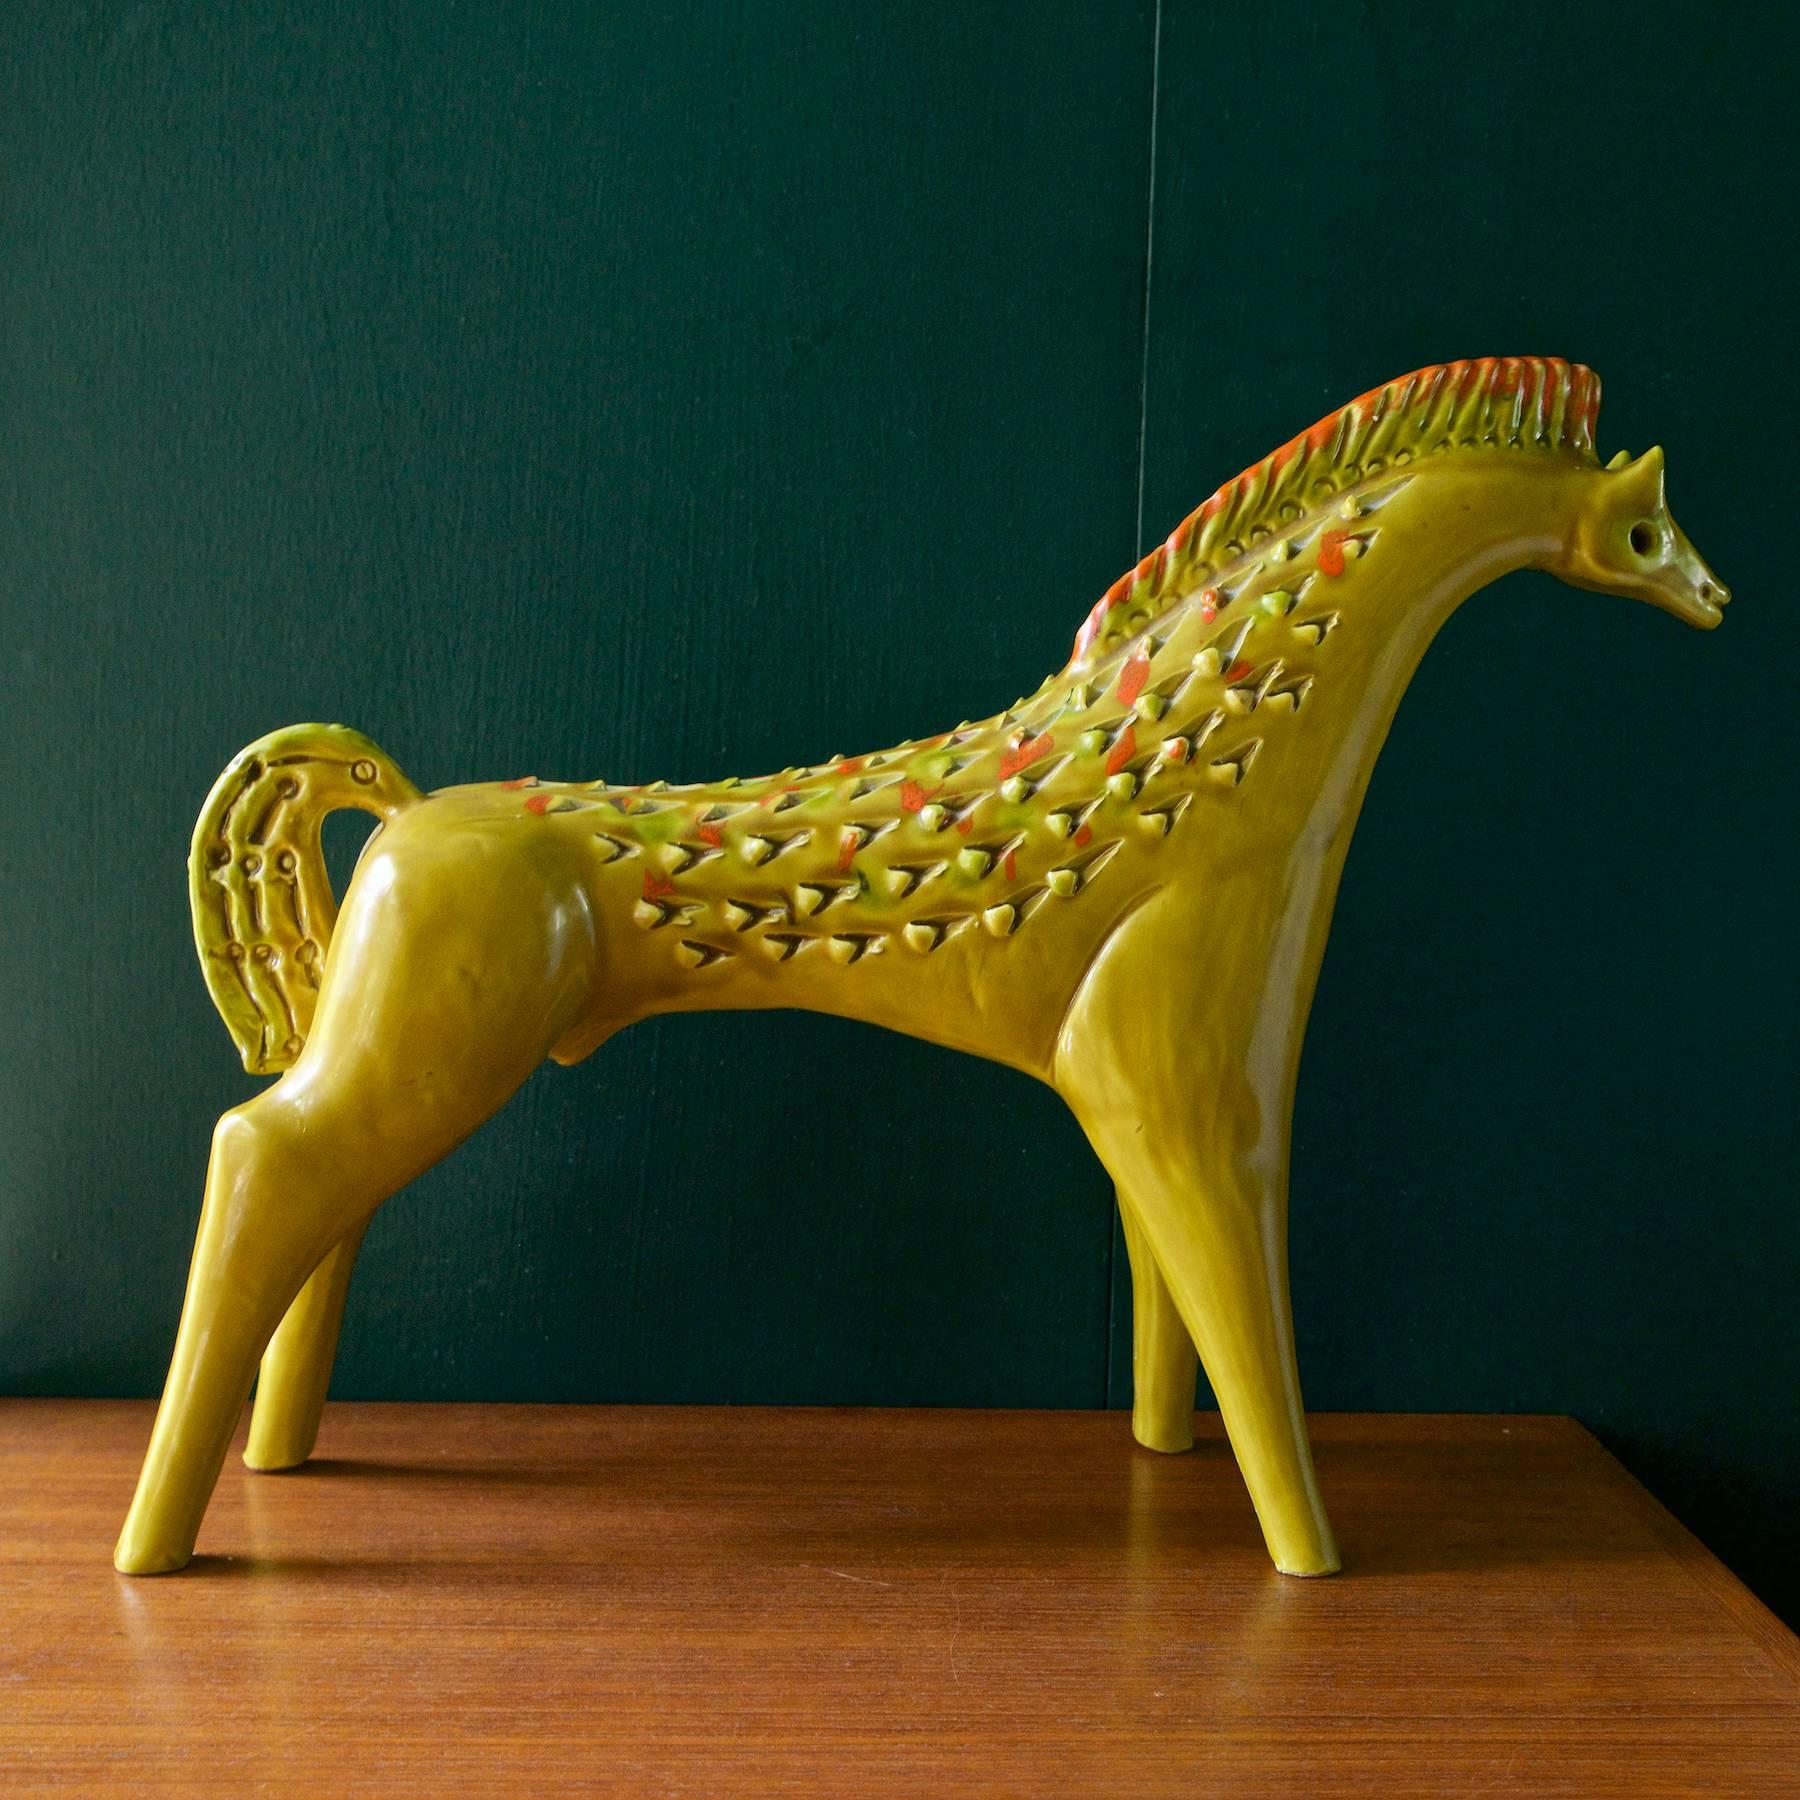 Sehr große italienische Pferdeskulptur der Moderne in Gelbtönen mit einigen orangefarbenen Flecken und den für Bitossi typischen unregelmäßigen dreieckigen Einschnitten. Auf dem Fuß ist ITALY eingeprägt.